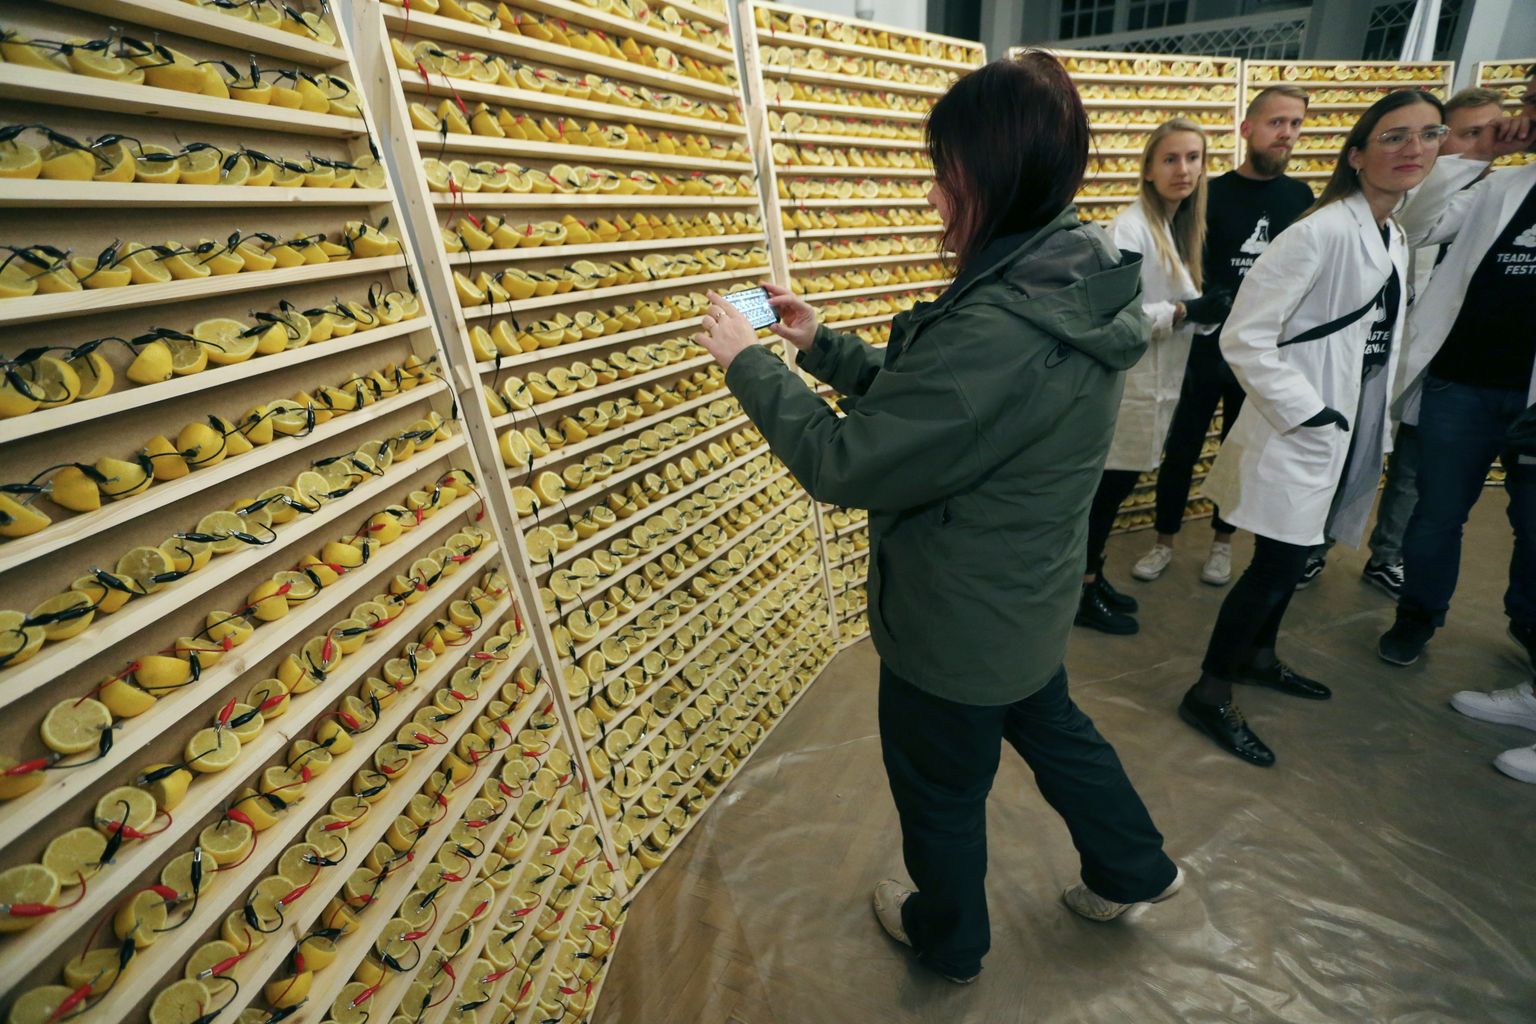 Möödunud aastal püüti Teadlaste öö nädala raames Tartu ülikooli muuseumis lüüa Guinnessi rekord - maailma suurim sidrunitest aku. Eksperiment ei õnnestunud.